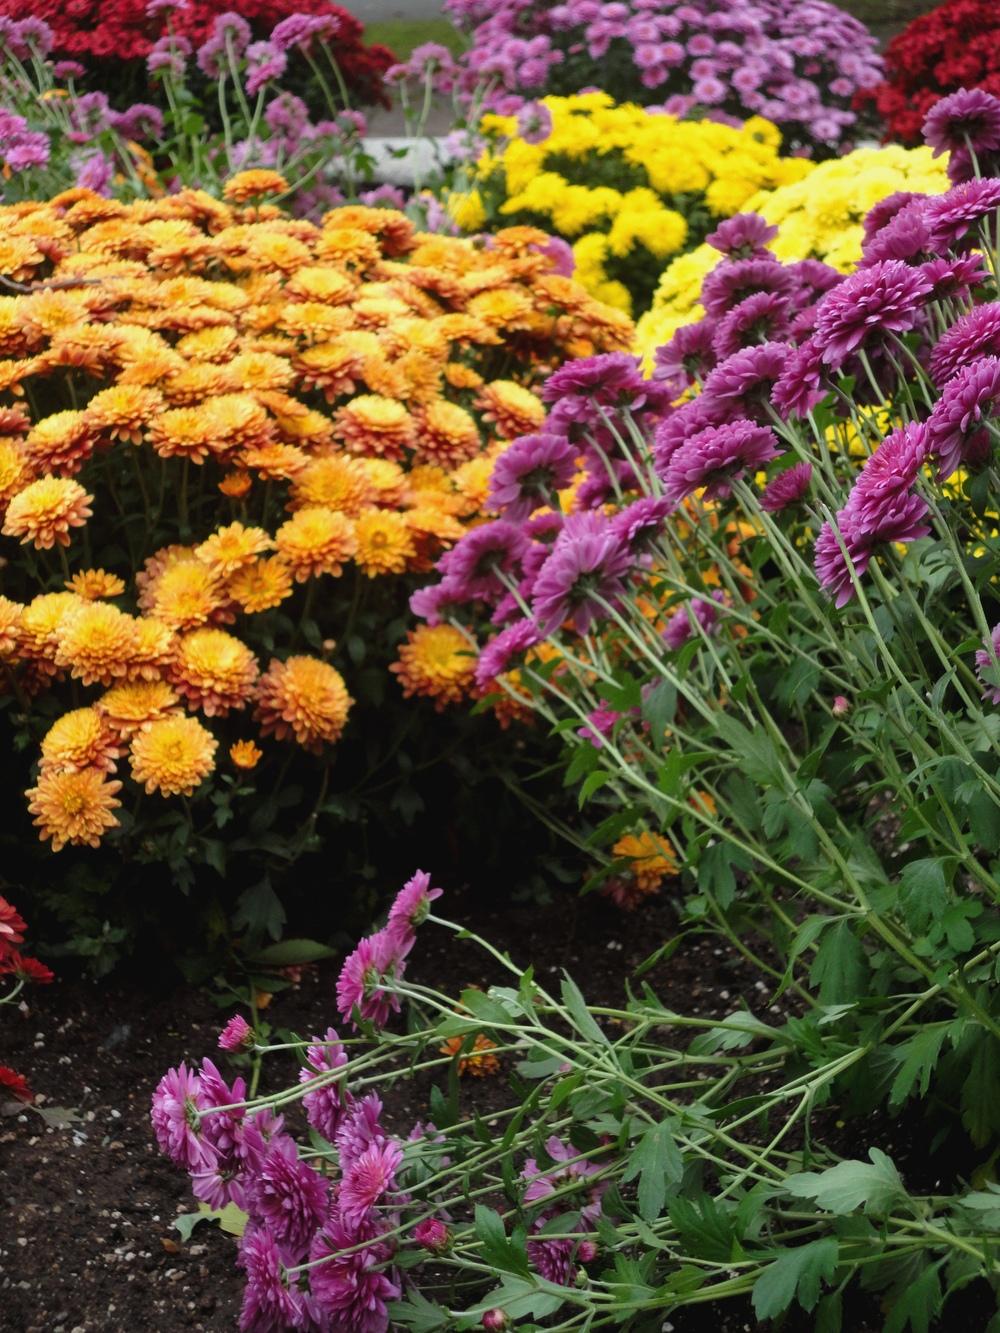 Photo of Chrysanthemum uploaded by Prosedda